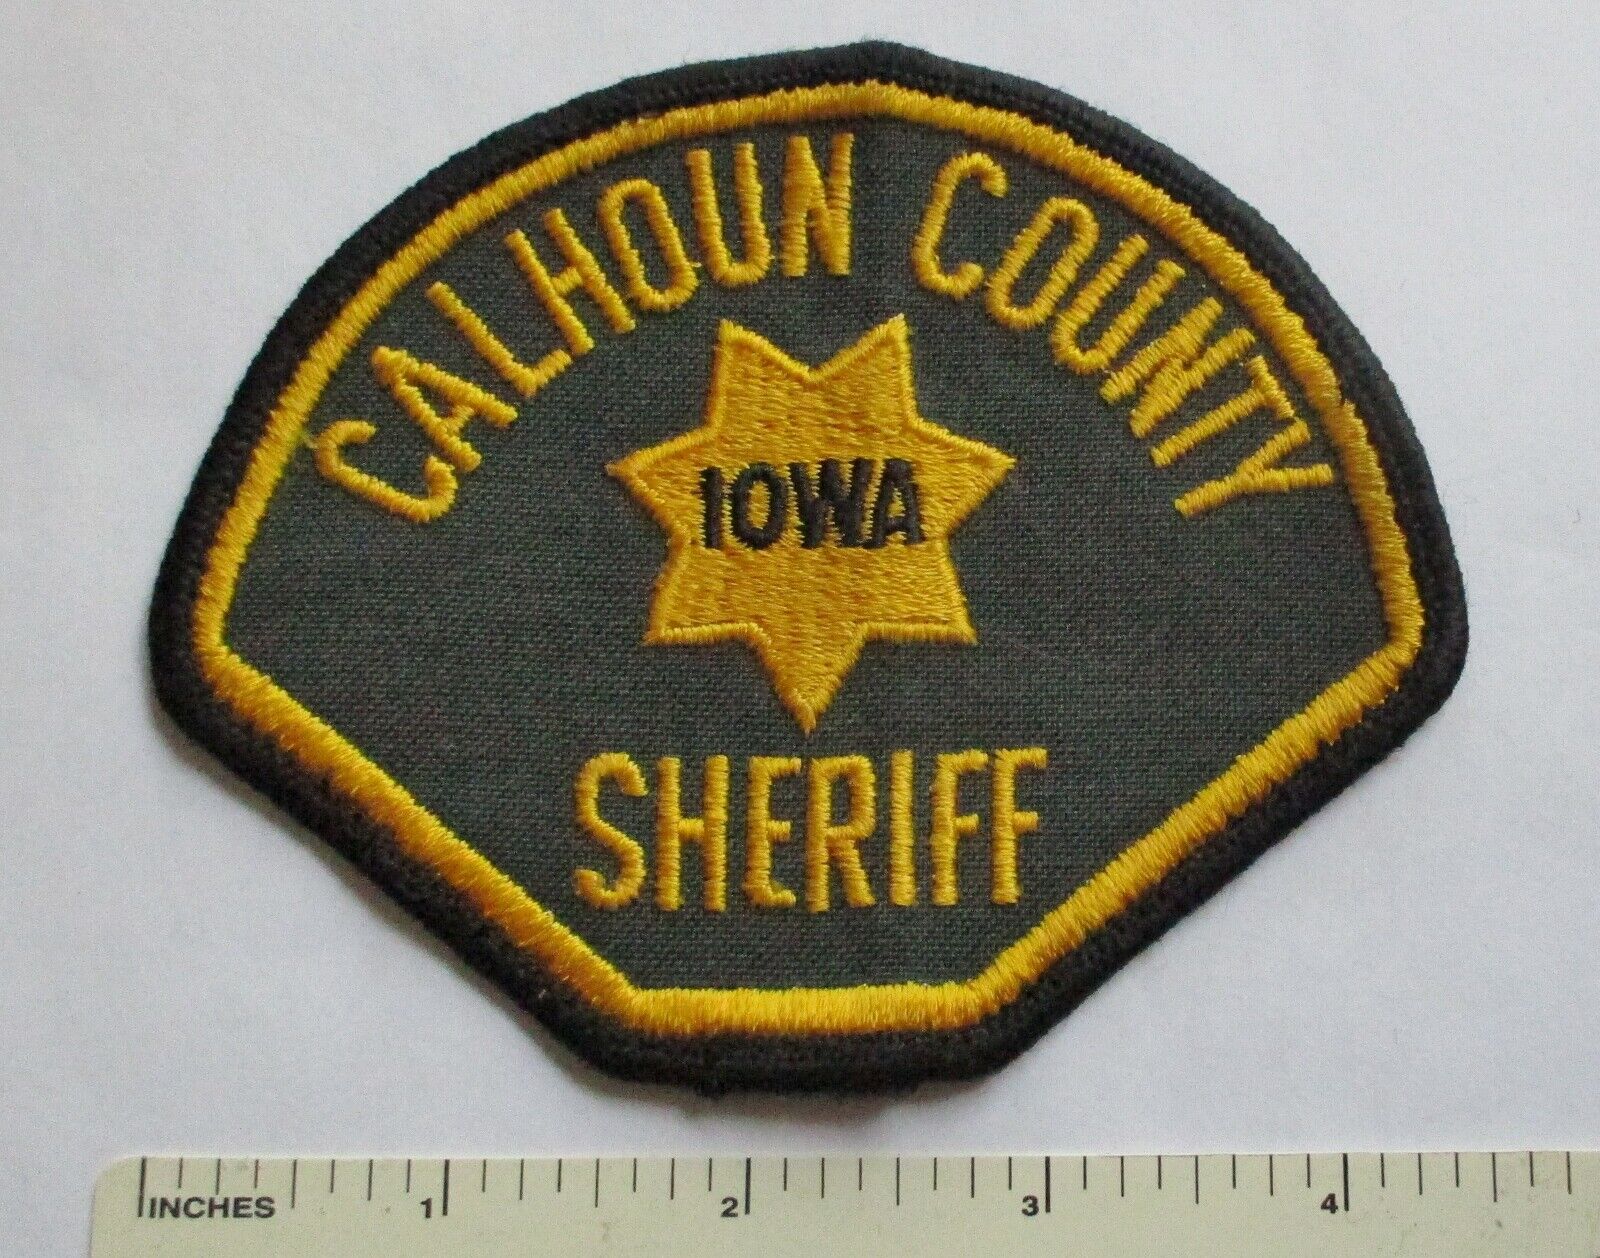 Calhoun County Iowa Sheriff Patch Used Original